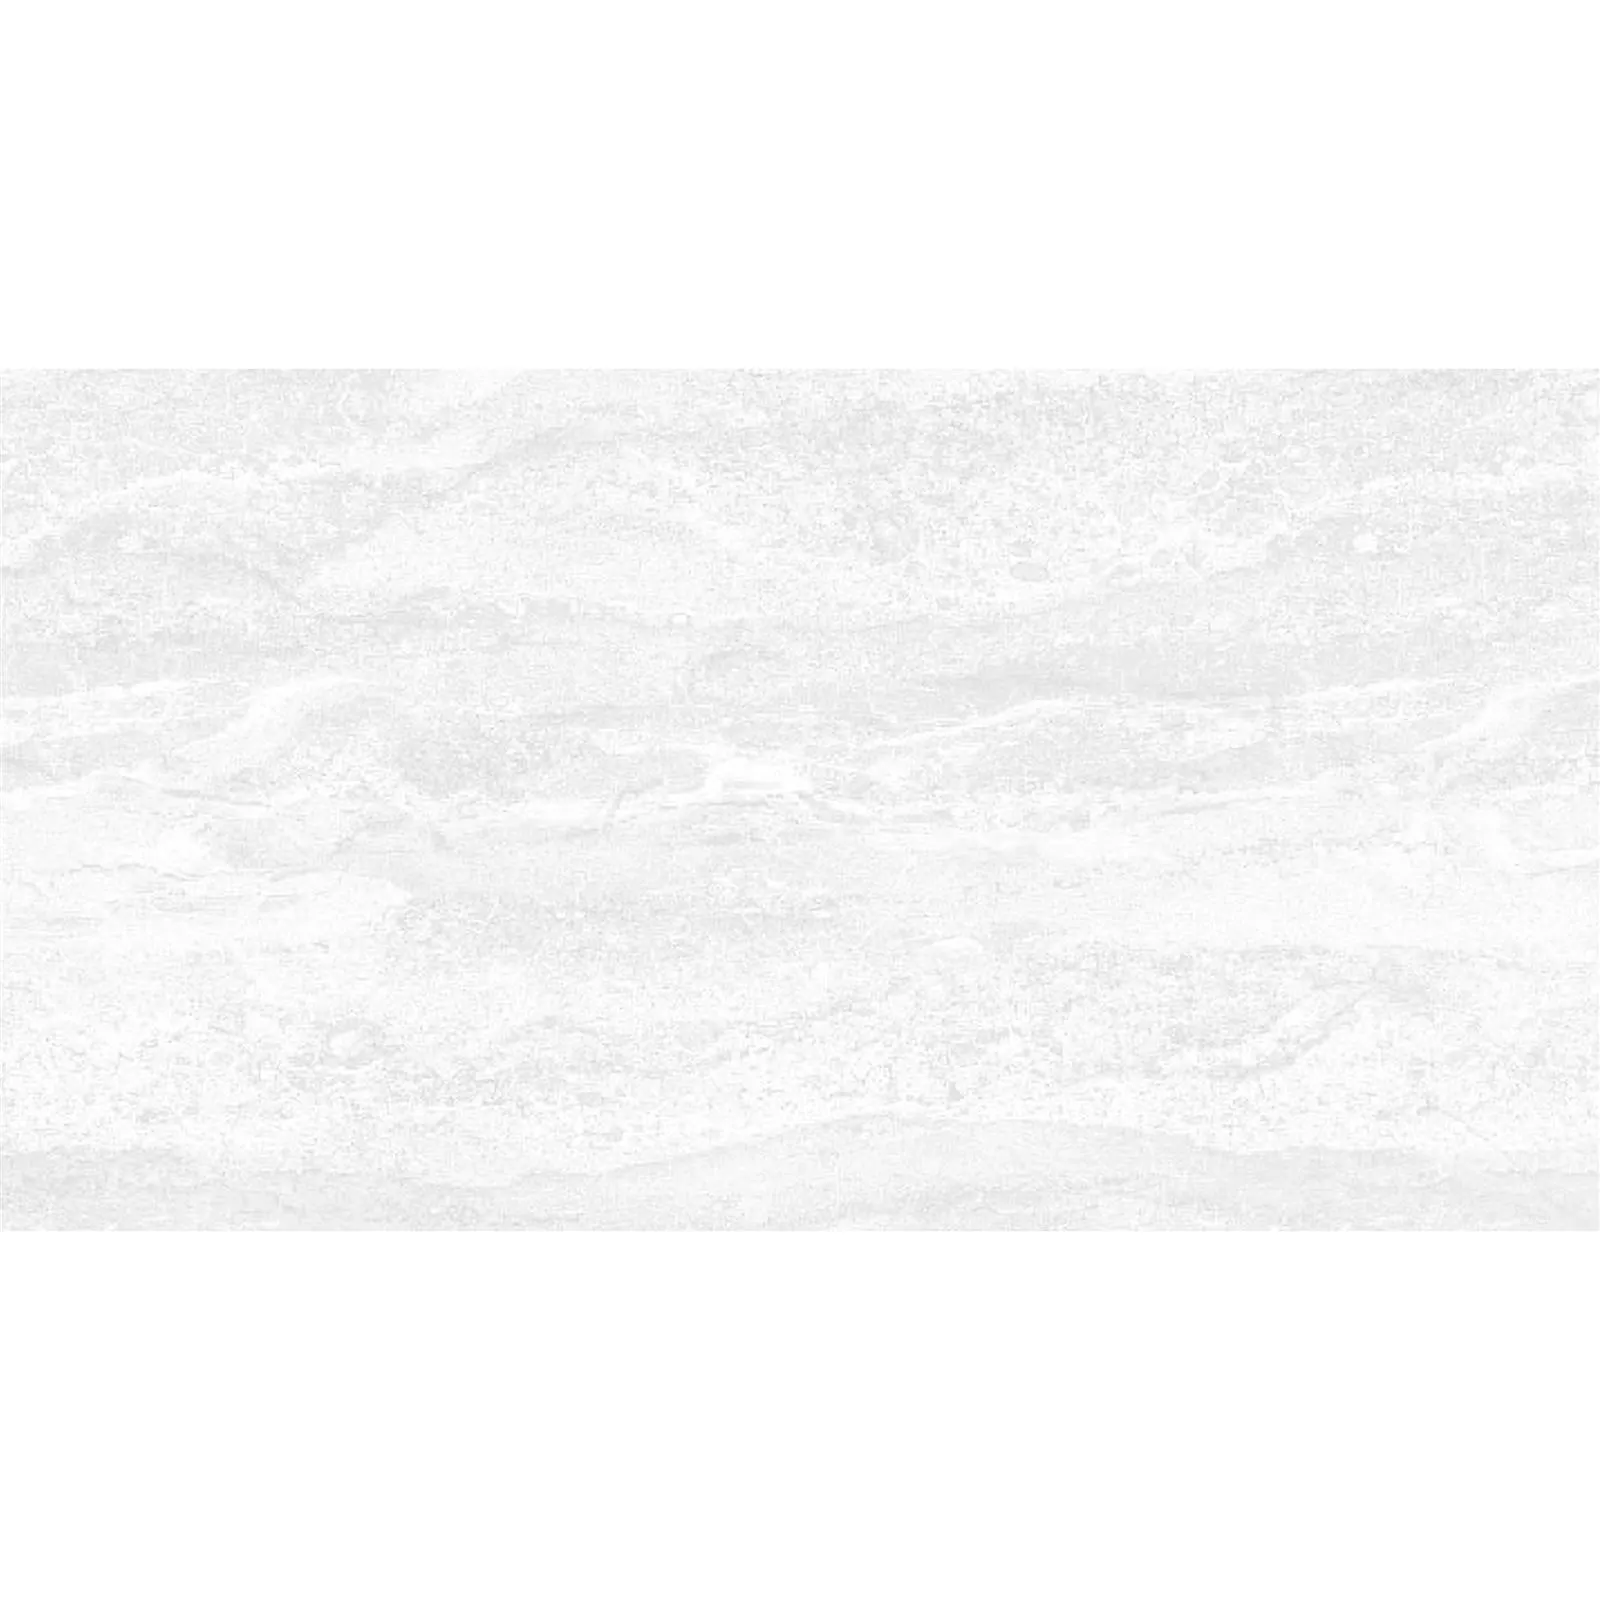 Πρότυπο Πλακάκια Tοίχου Theresa 30x60cm Δομημένος Ασπρο